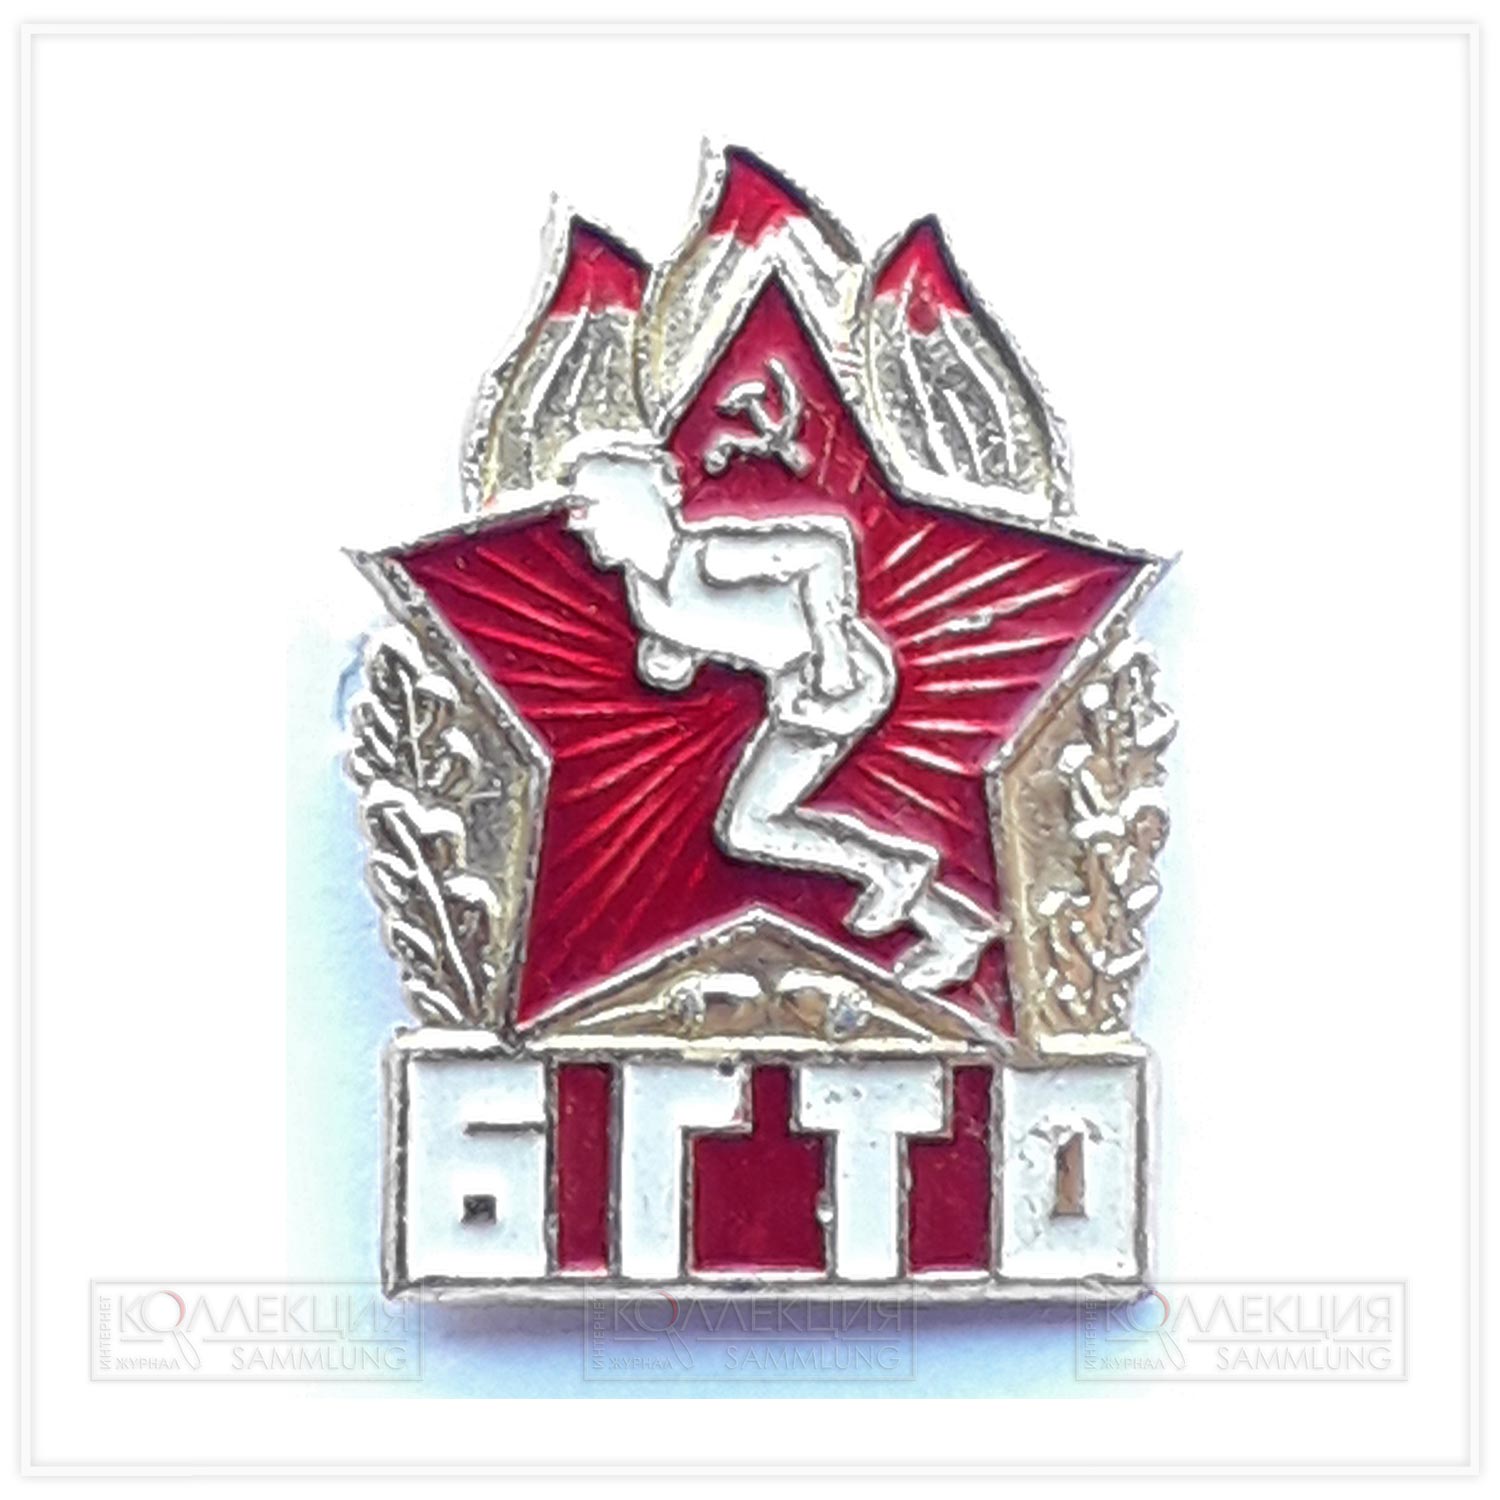 Разновидности значков ГТО СССР образца 1961 года